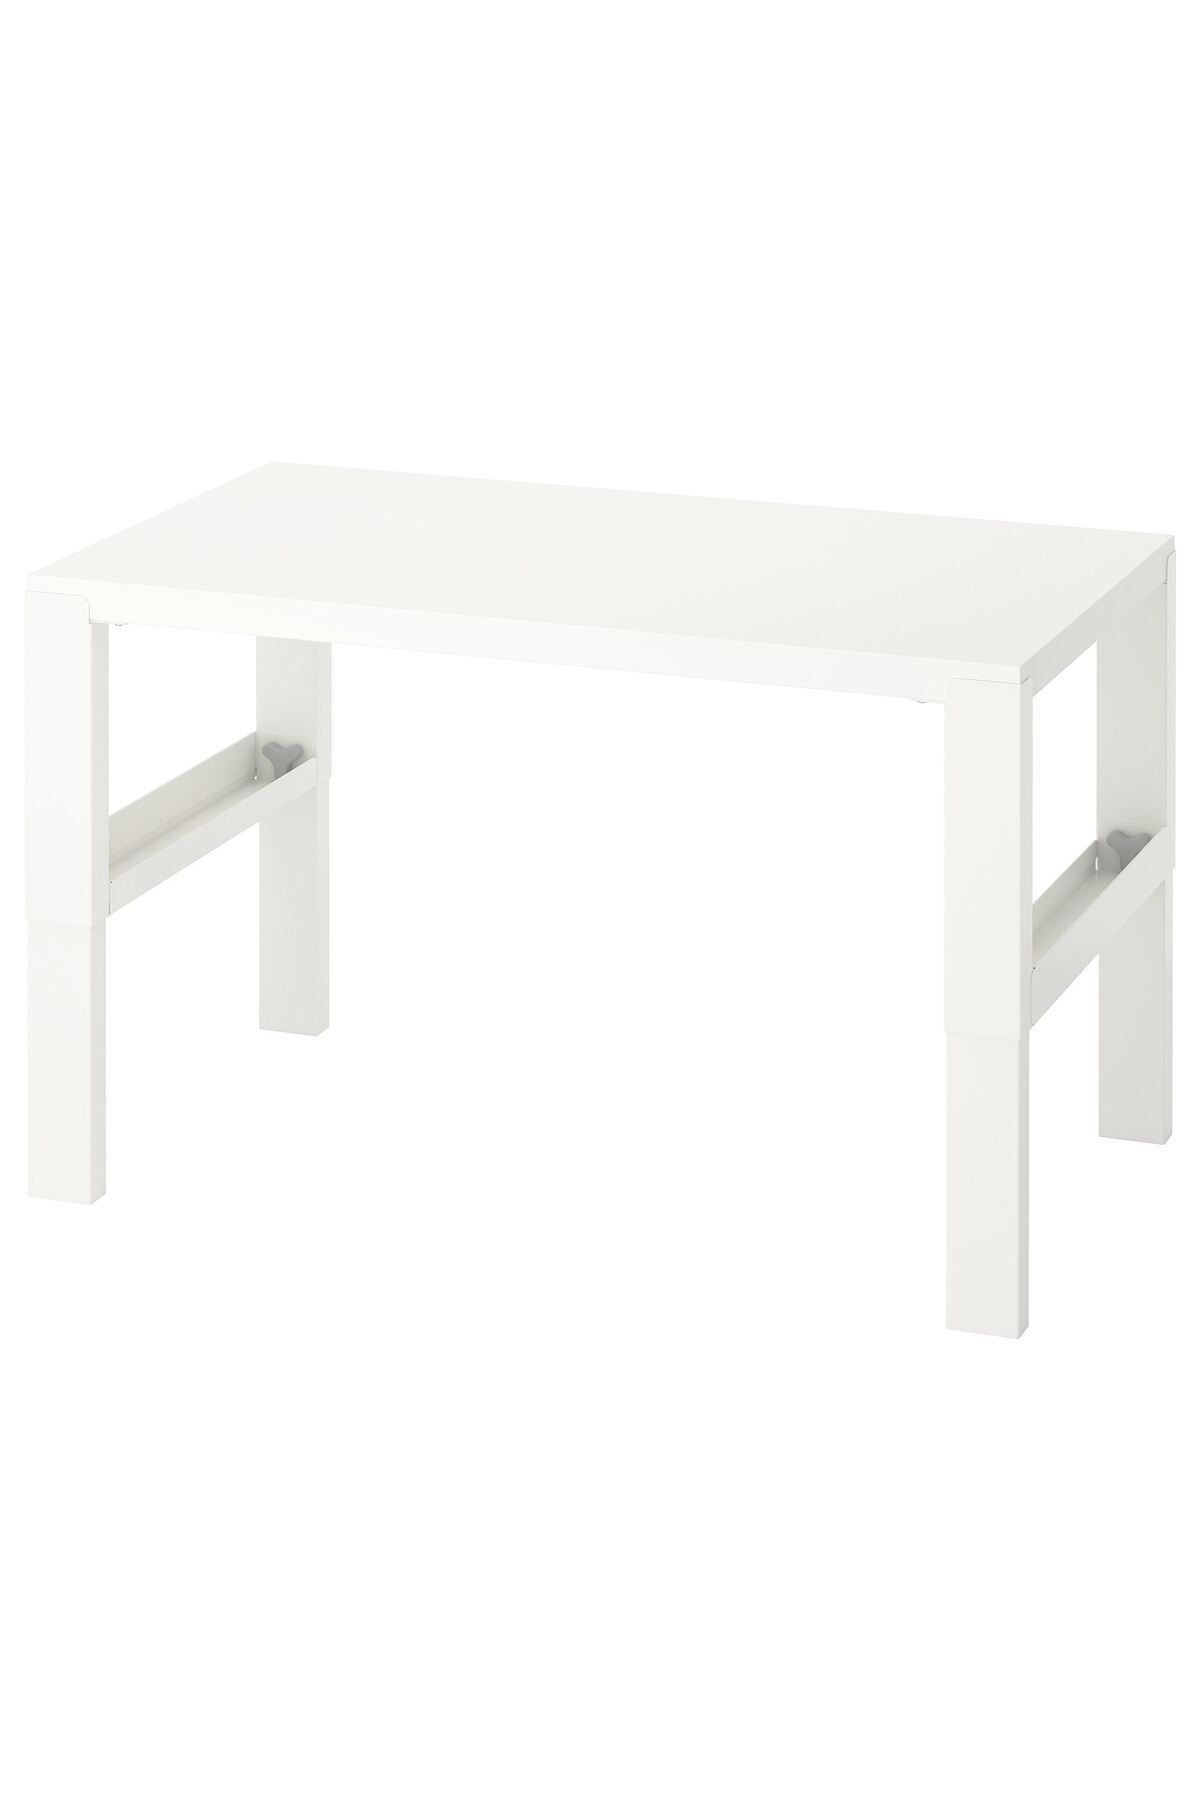 IKEA çocuk çalışma masası, beyaz-turkuaz, 96x58 cm